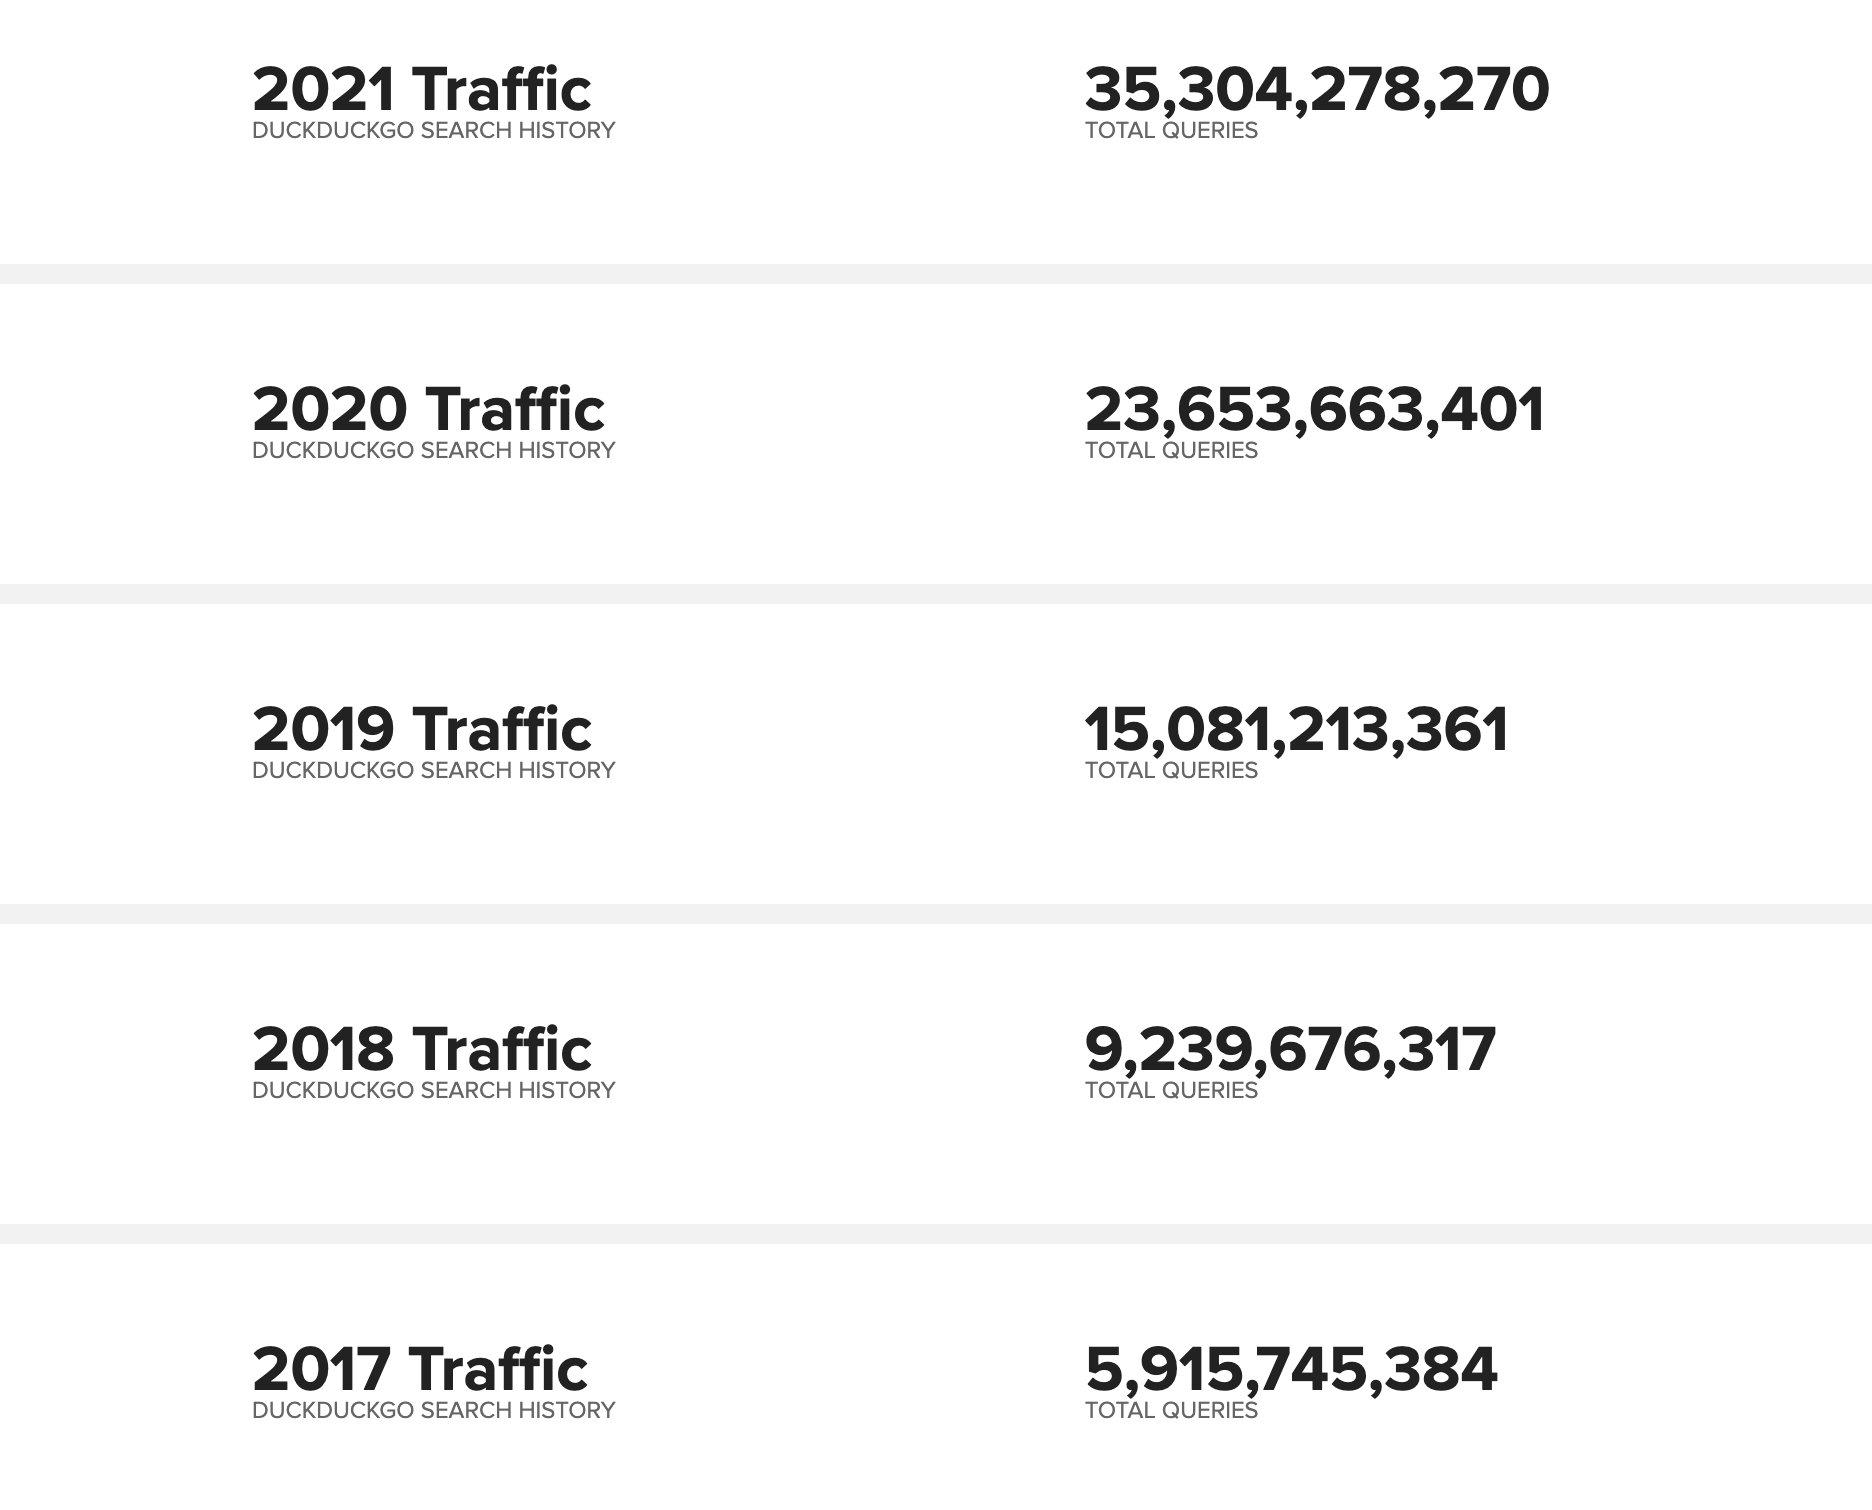 Annual growth of DuckDuckGo traffic.